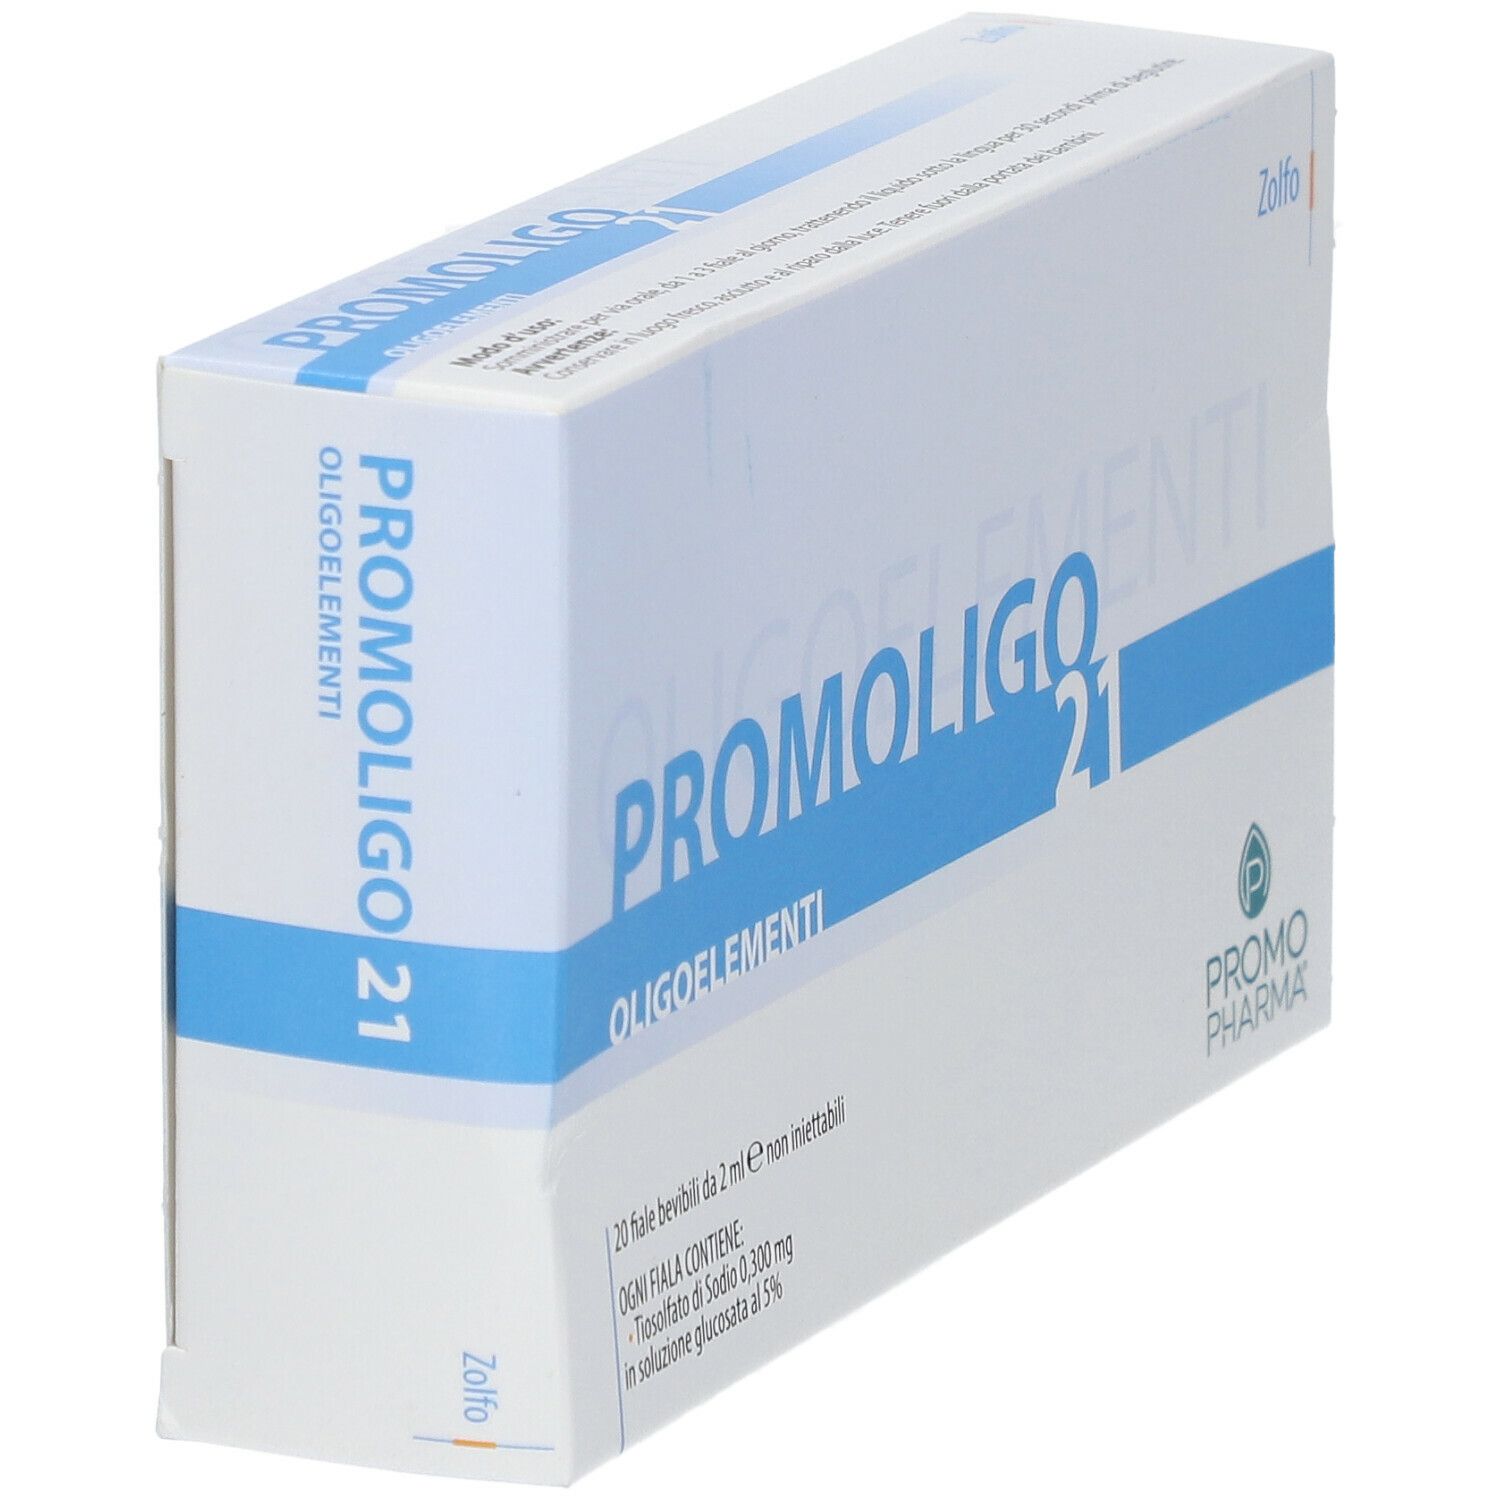 PromoPharma® PROMOLIGO 21 Zolfo Oligoelementi